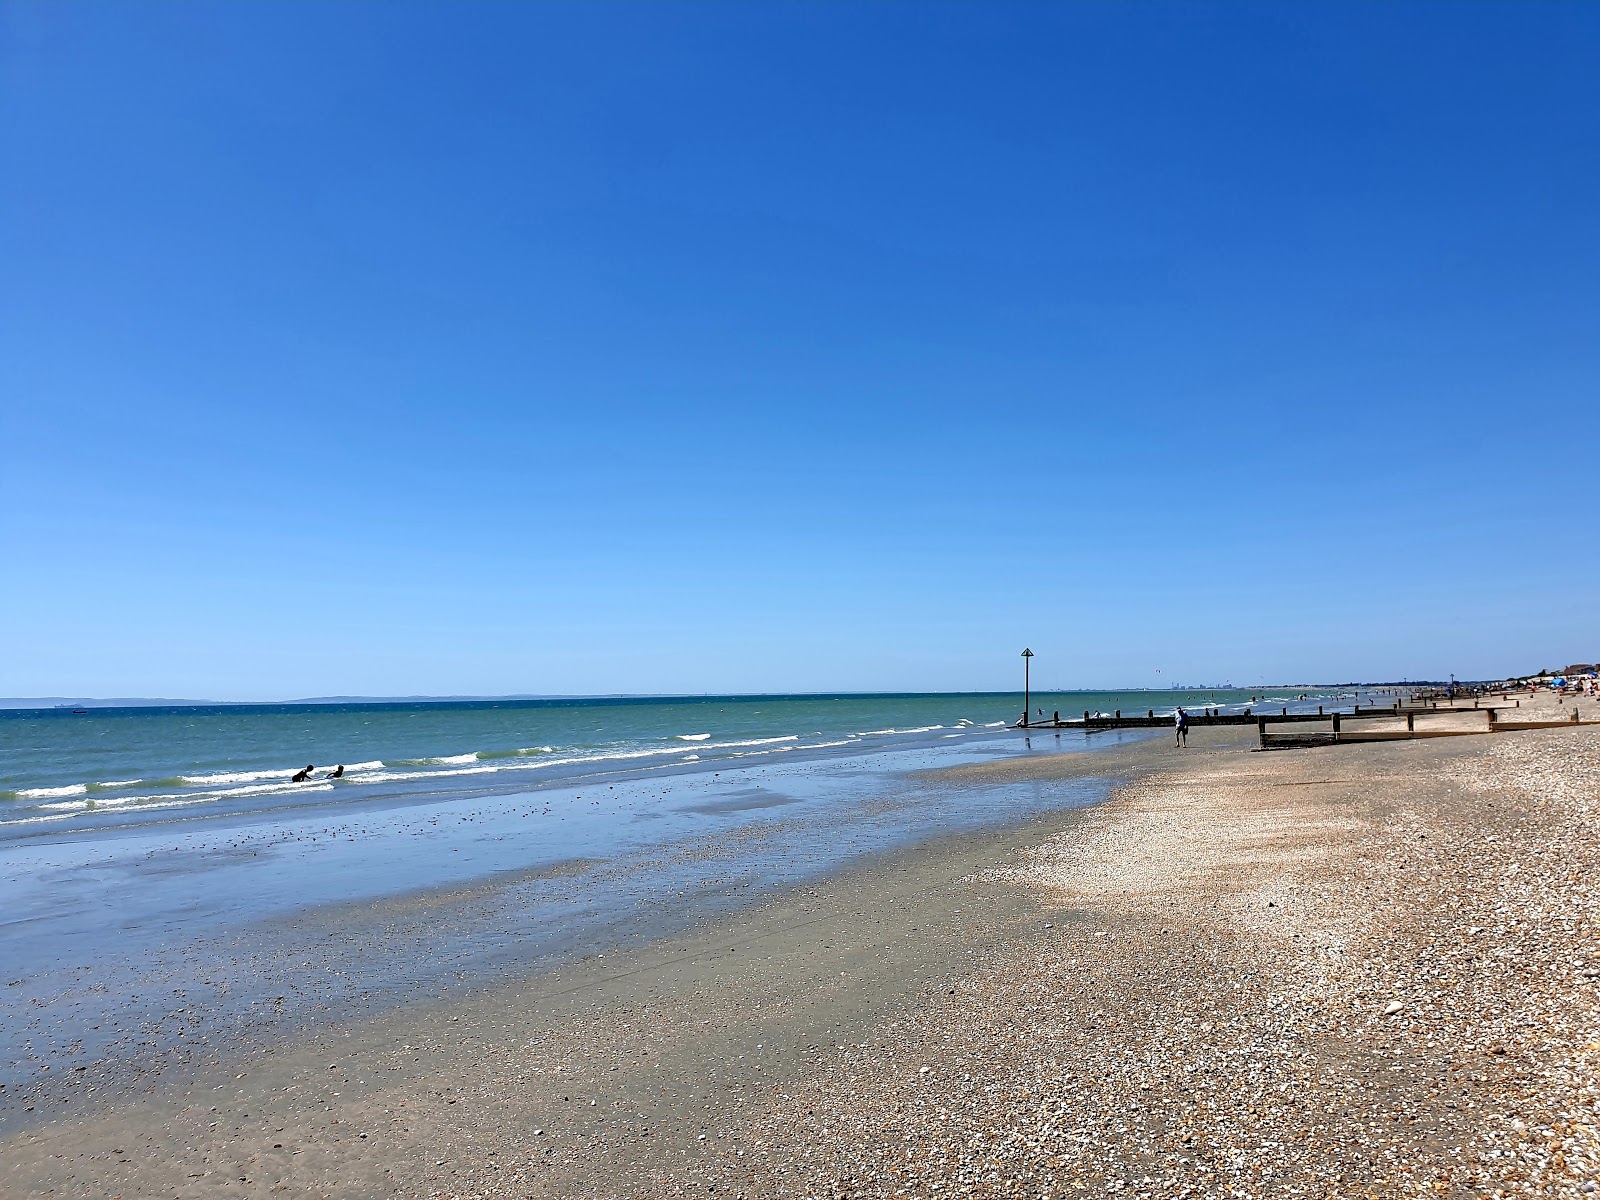 Φωτογραφία του East Wittering beach με ψιλή άμμος και βότσαλο επιφάνεια